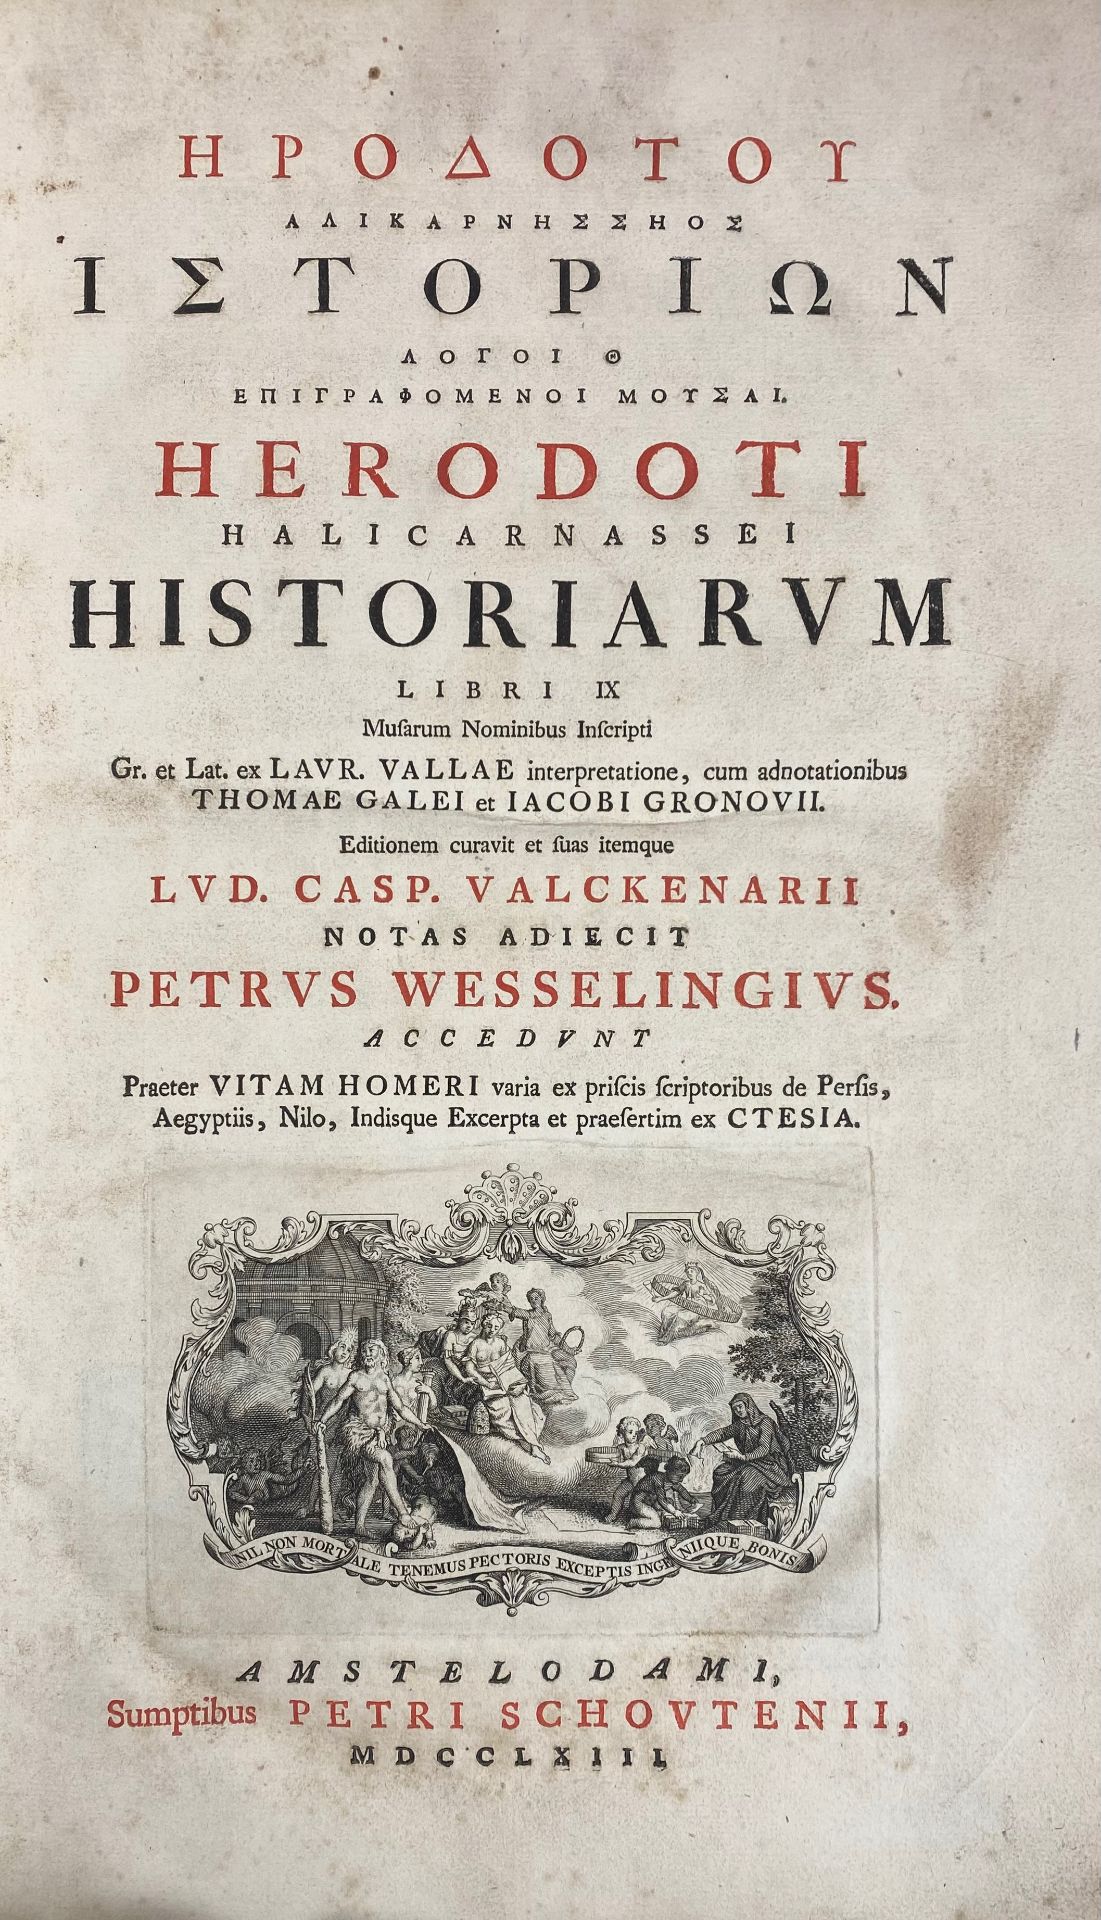 AMSTERDAM -- HERODOTUS. Historiarum ll. IX. Musarum nominibus inscripti Gr. et Lat. L